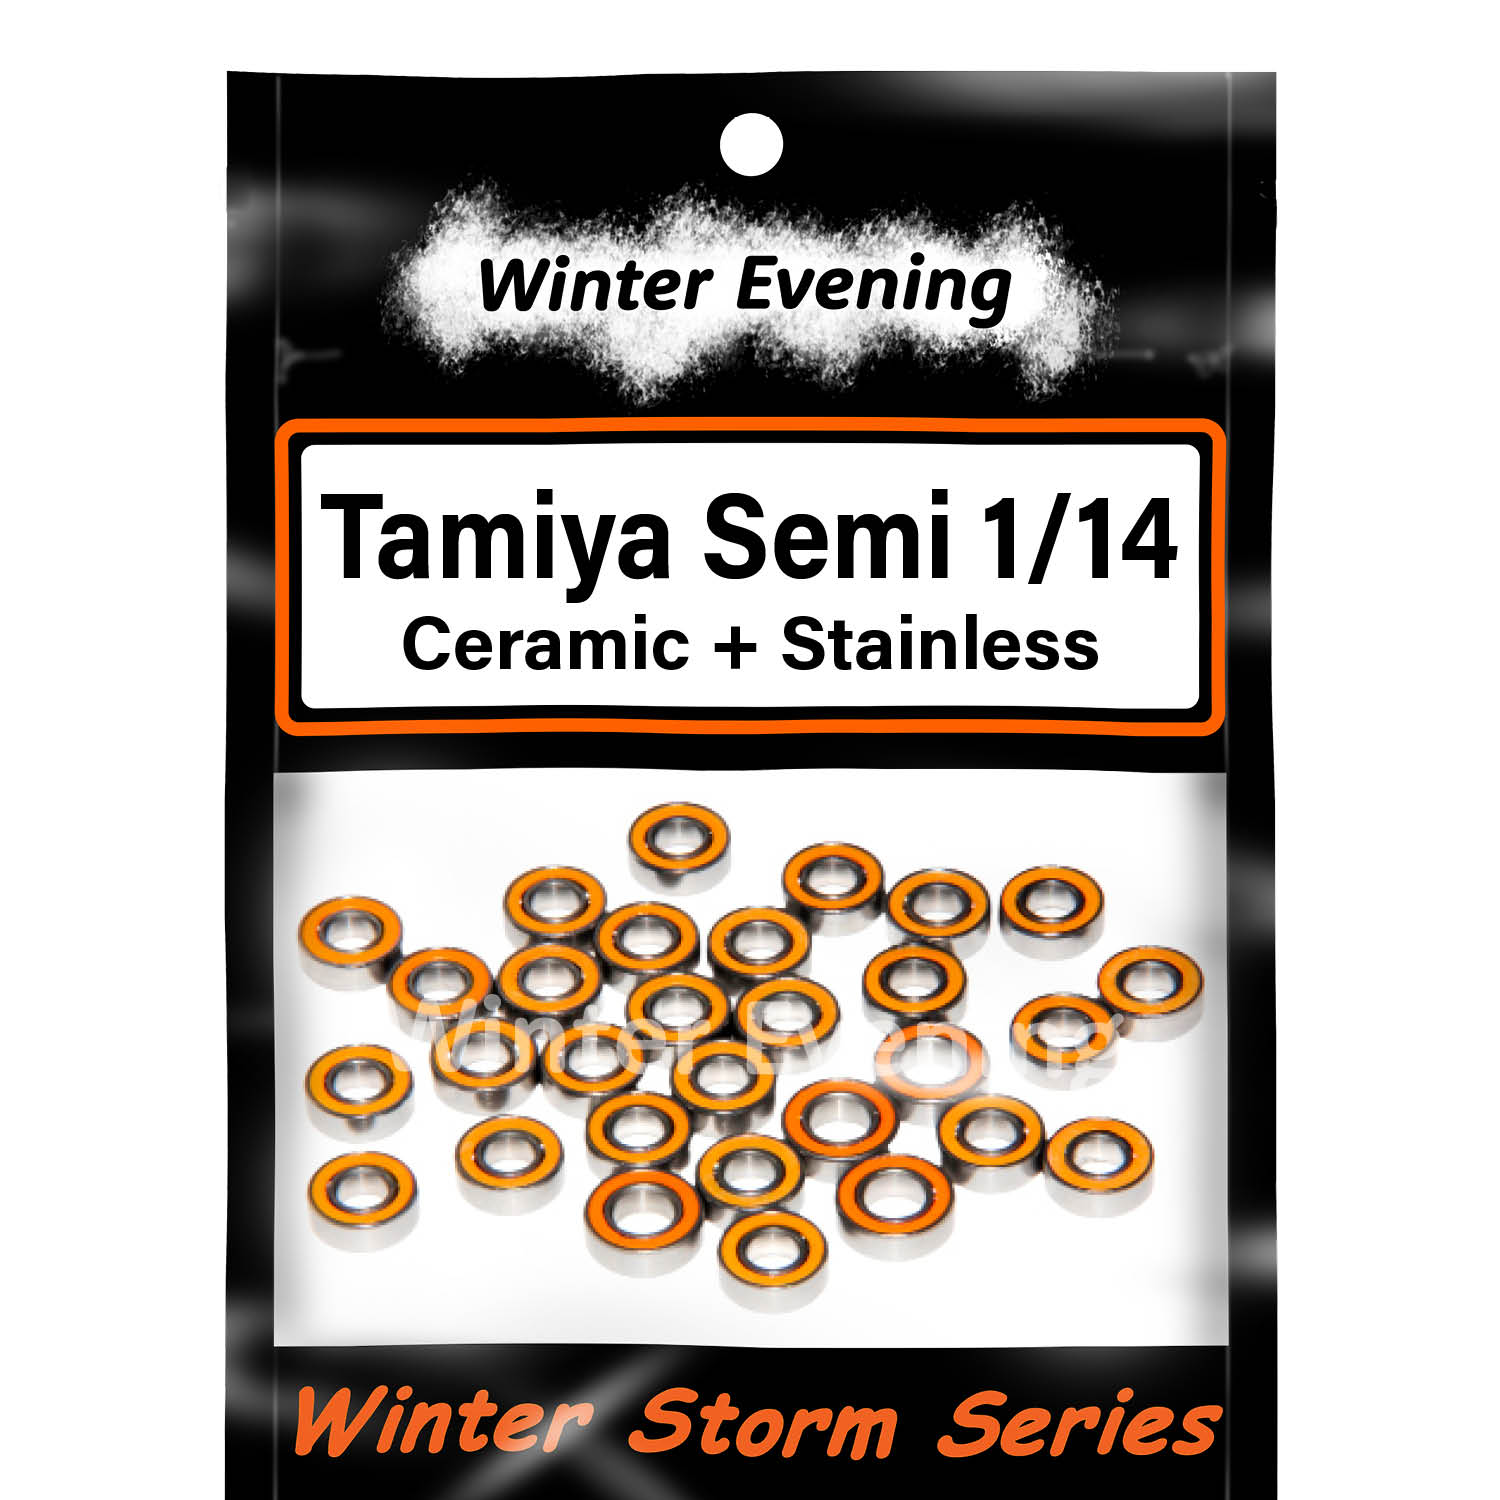 Ceramic + Stainless - Tamiya 1/14 Semi - Grand, Freight, Globe Liner Bearings